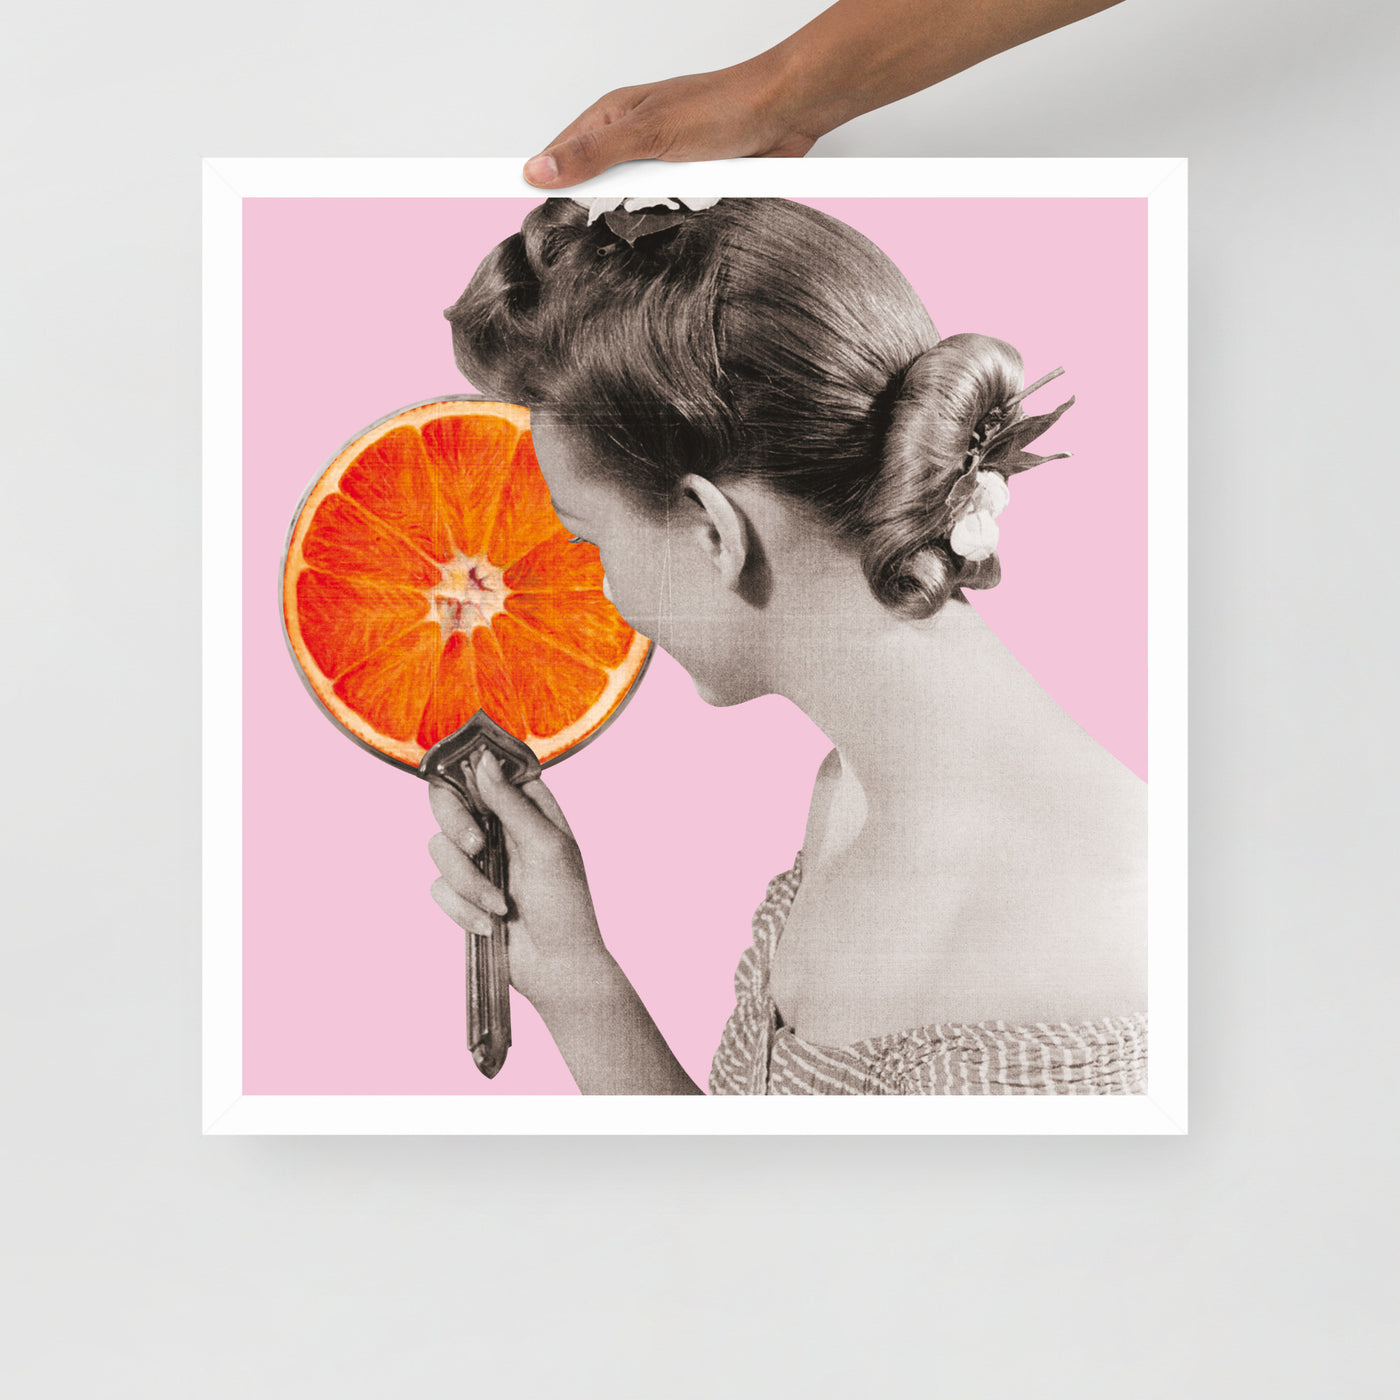 Gerahmtes Bild Kollektion "Kitchen Art" - Frau mit Orangenspiegel